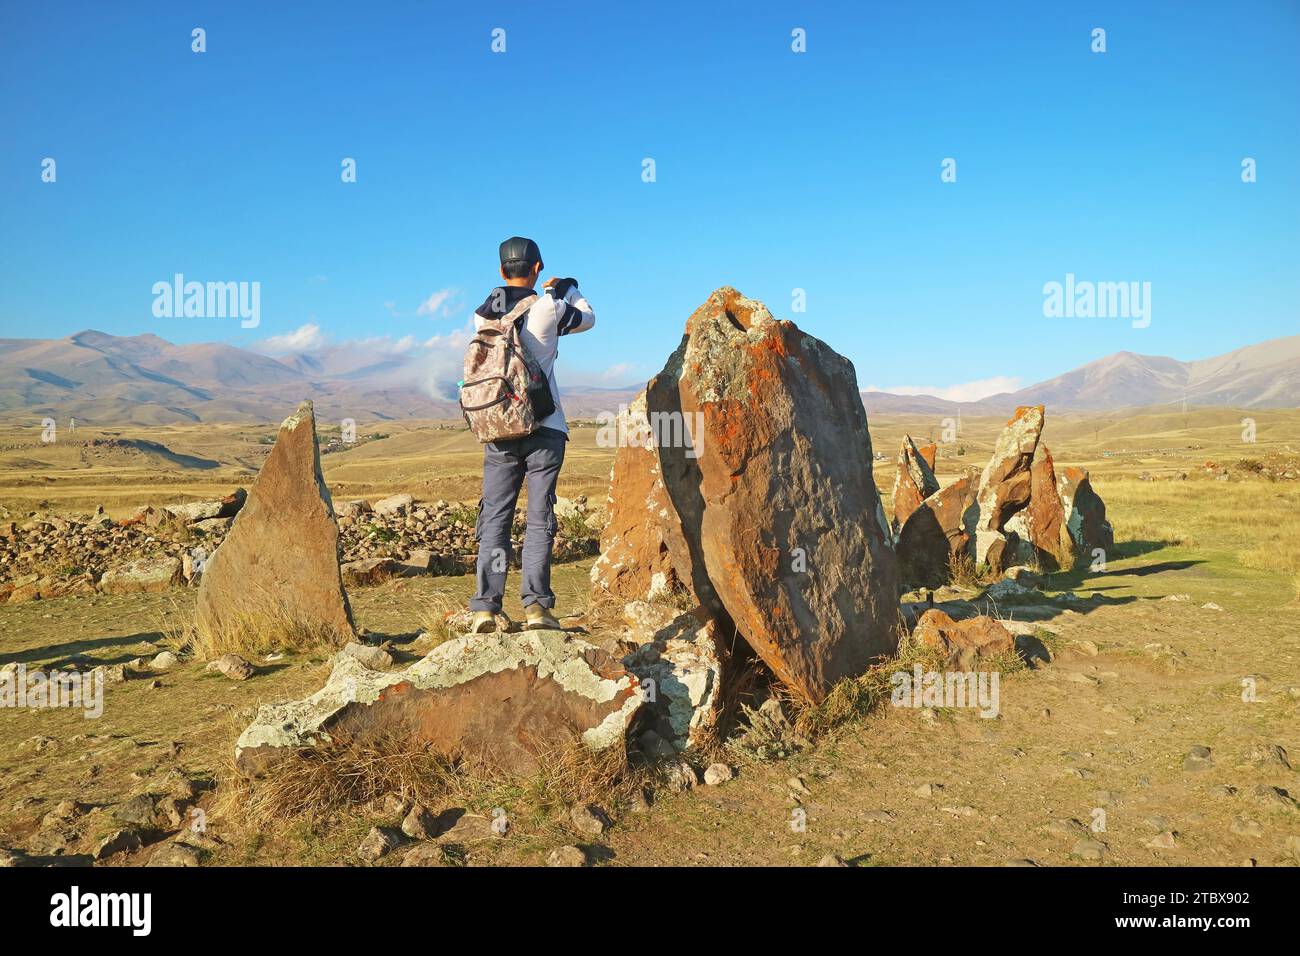 Visiteur à Carahunge, souvent appelé Stonehenge arménien, un site archéologique préhistorique dans la province de Syunik en Arménie Banque D'Images